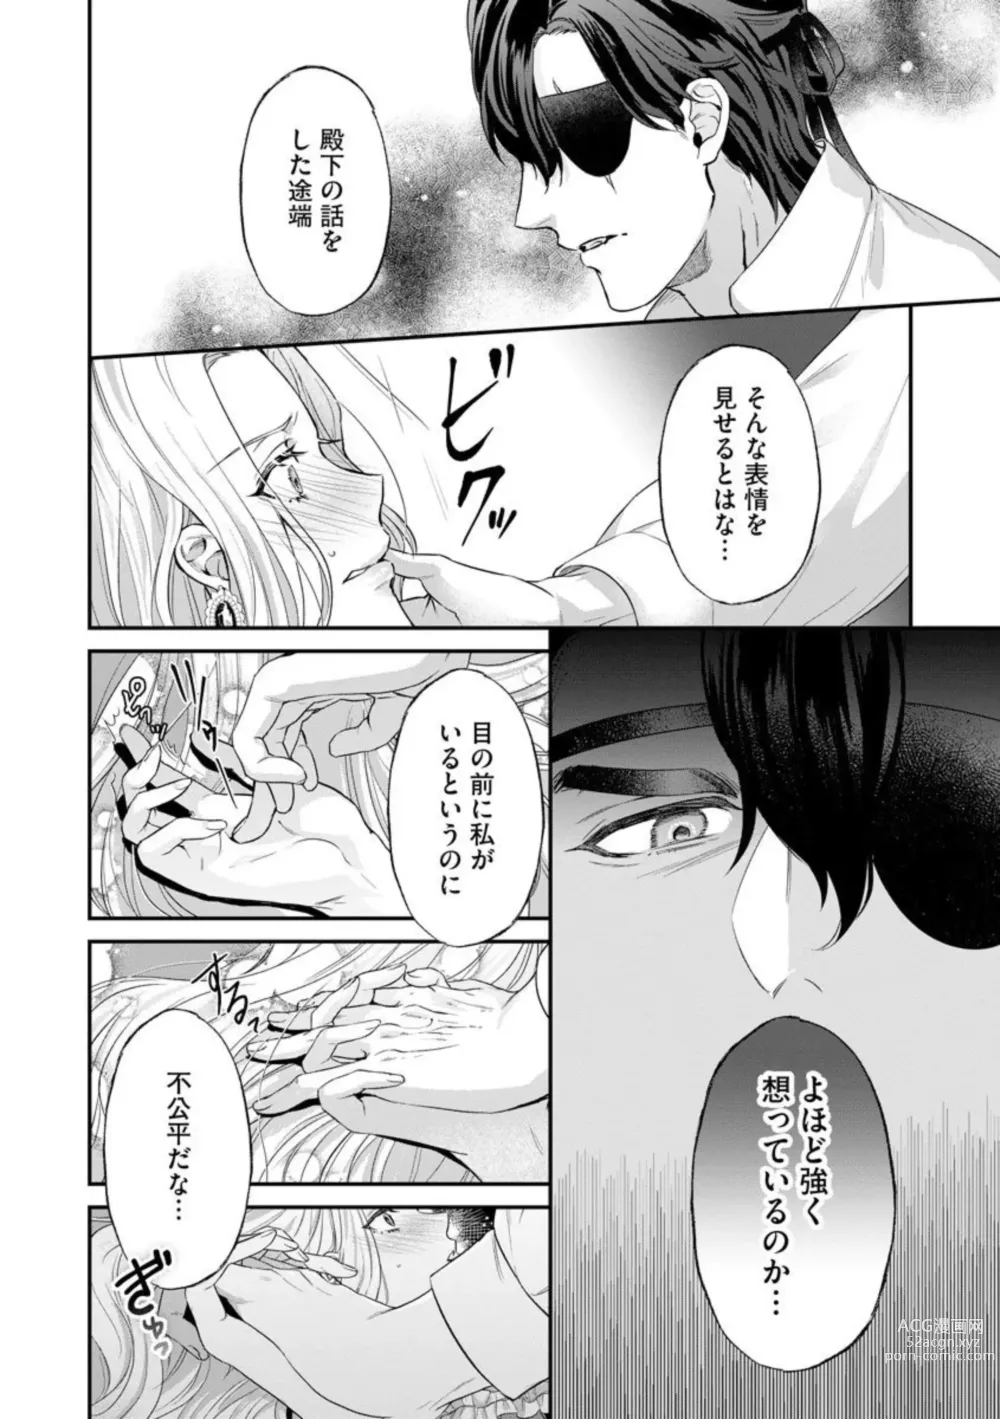 Page 28 of manga Kaibutsu Hakushaku no Amai Hana Akuyaku Reijou wa Bed de Midare Chiru 1